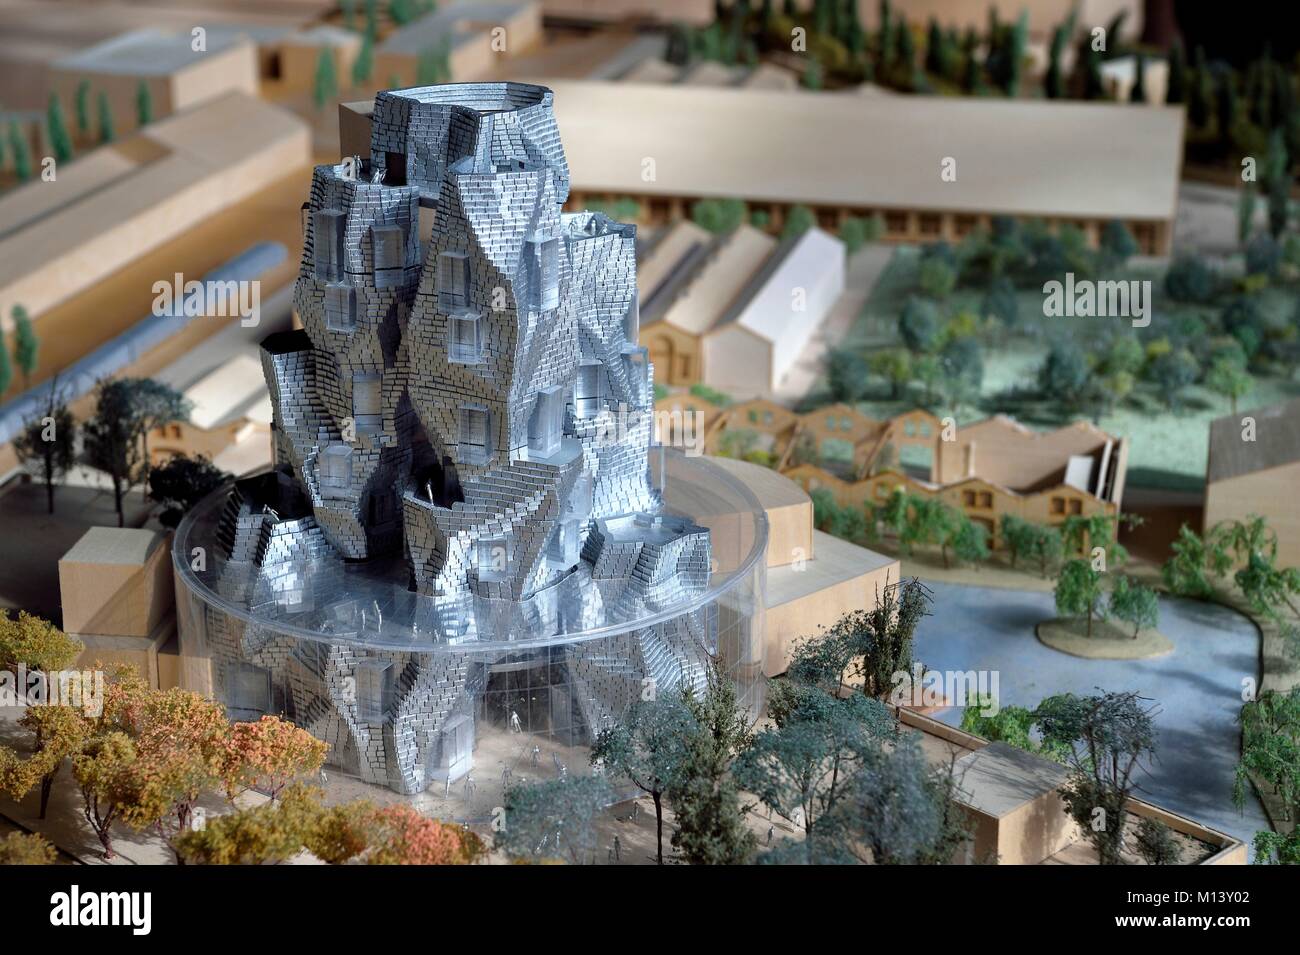 France, Bouches du Rhône, Arles, la Fondation LUMA, complexe culturel expérimental, le modèle du nouveau bâtiment conçu par Frank Gehry et rénové les friches industrielles Banque D'Images